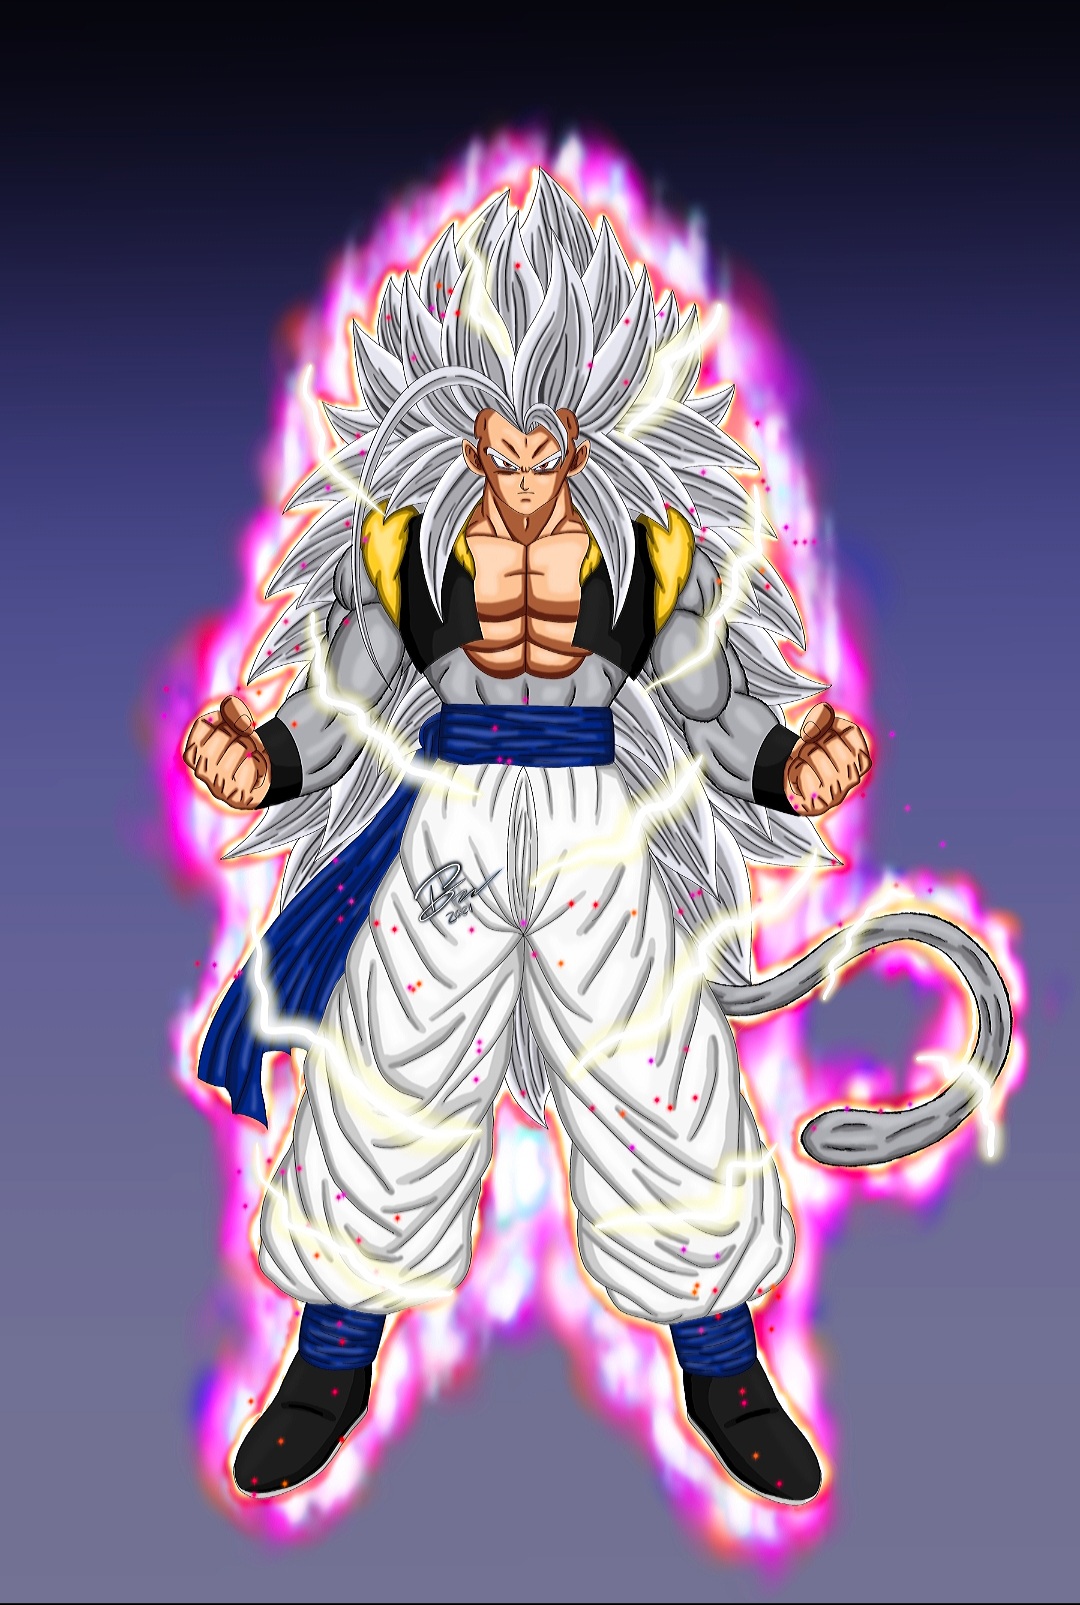 Goku Mastered Ultra Instinct Vs SSJ5 Goku by BrandonKuhn24469 on